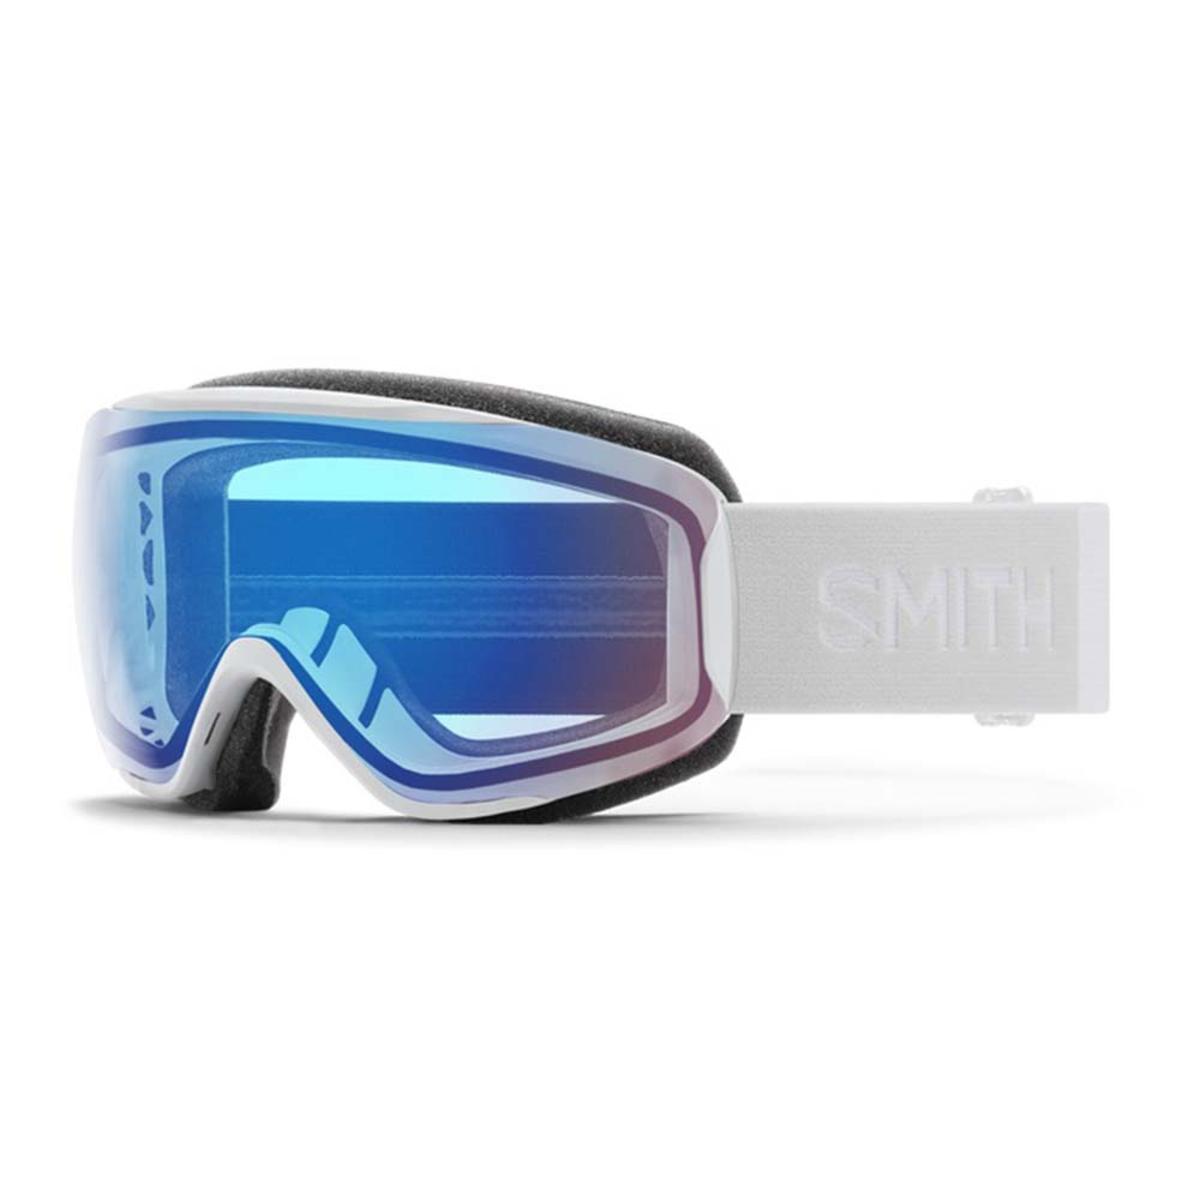 Smith Optics Women's Moment Goggles ChromaPop Storm Rose Flash Mirror - White Vapor Frame